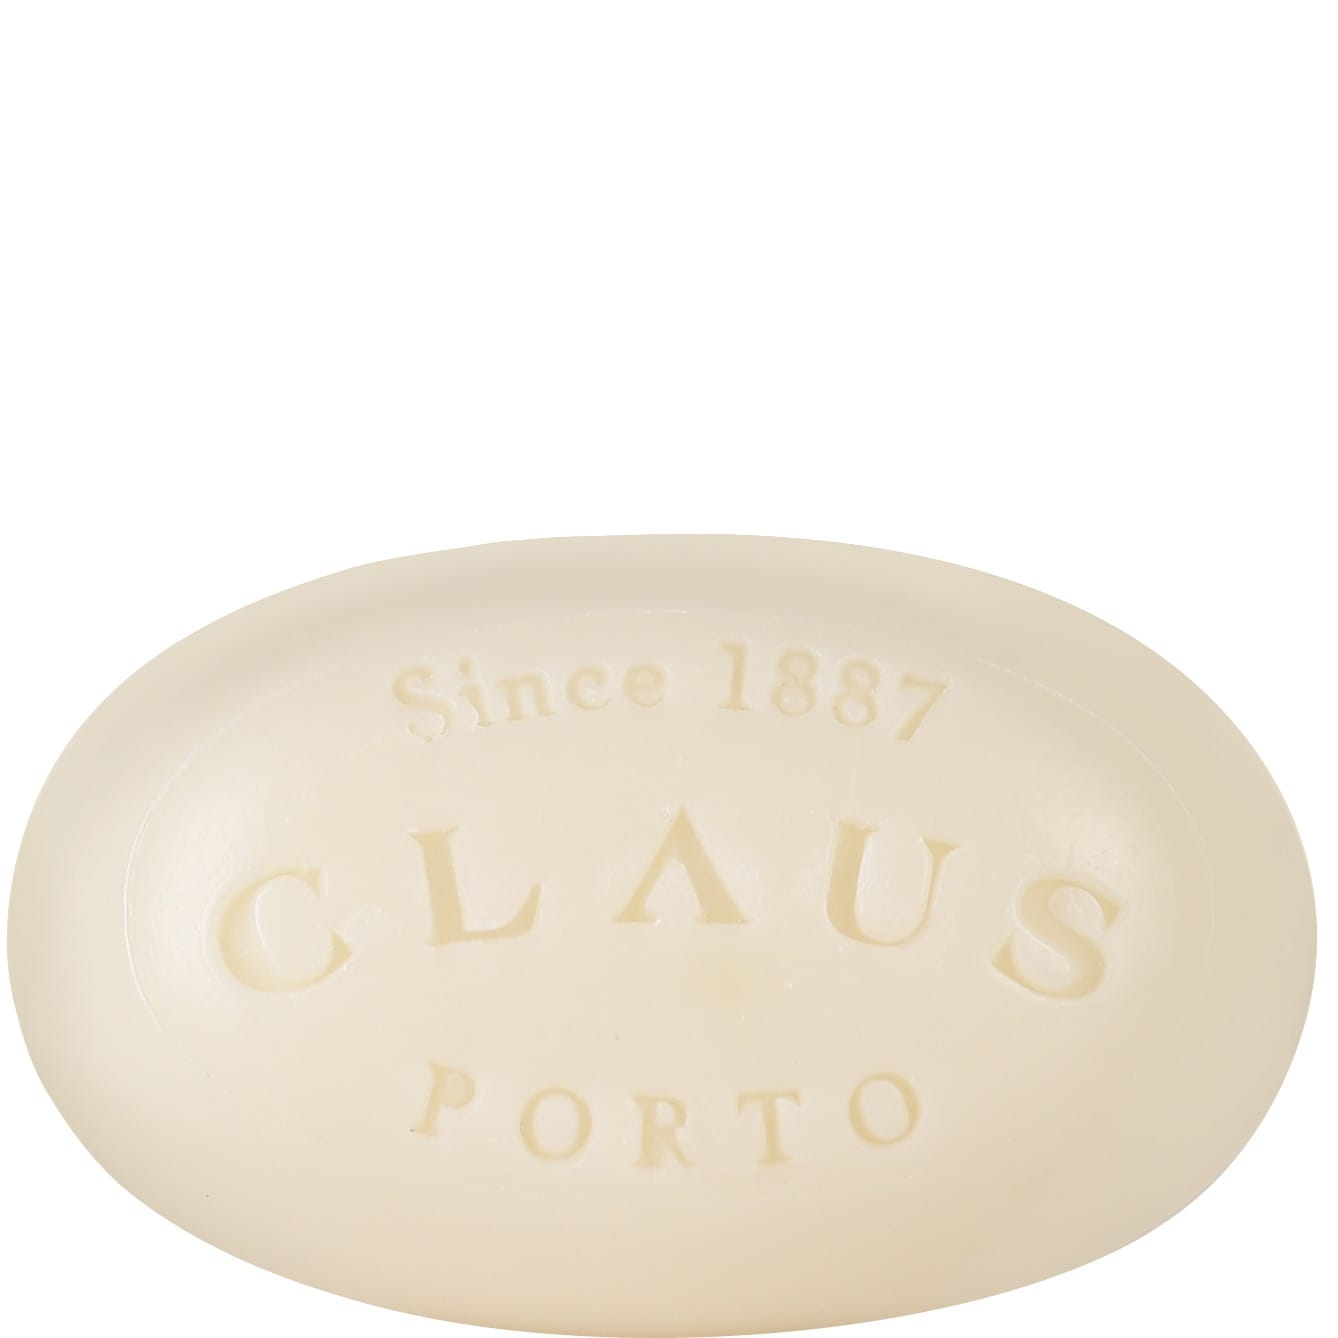 Claus Porto Mini Soap Alface Green Leaf 50g - 1.2 - CP-MS105